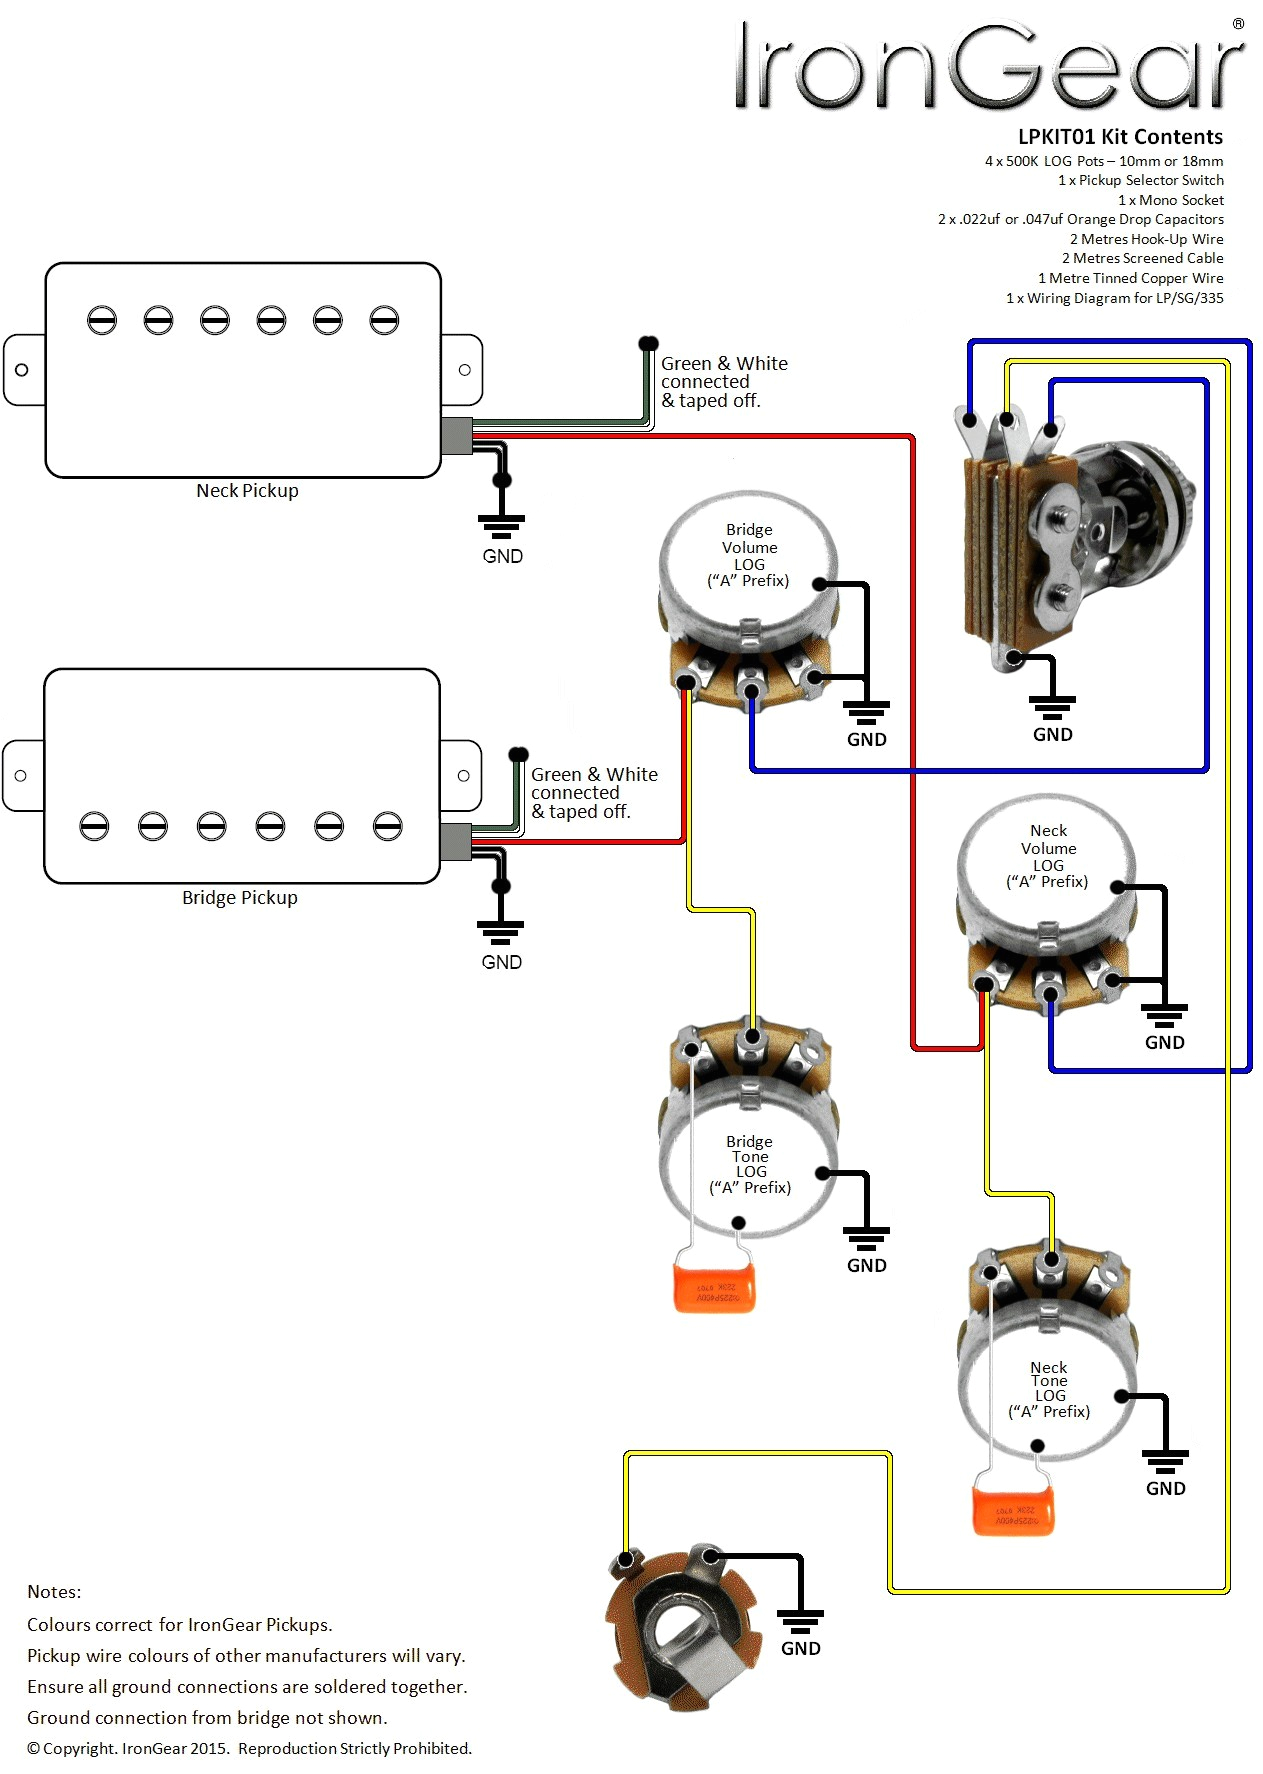 gibson 355 wiring diagram wiring diagram viewgibson 355 wiring diagram wiring diagram name gibson es 355